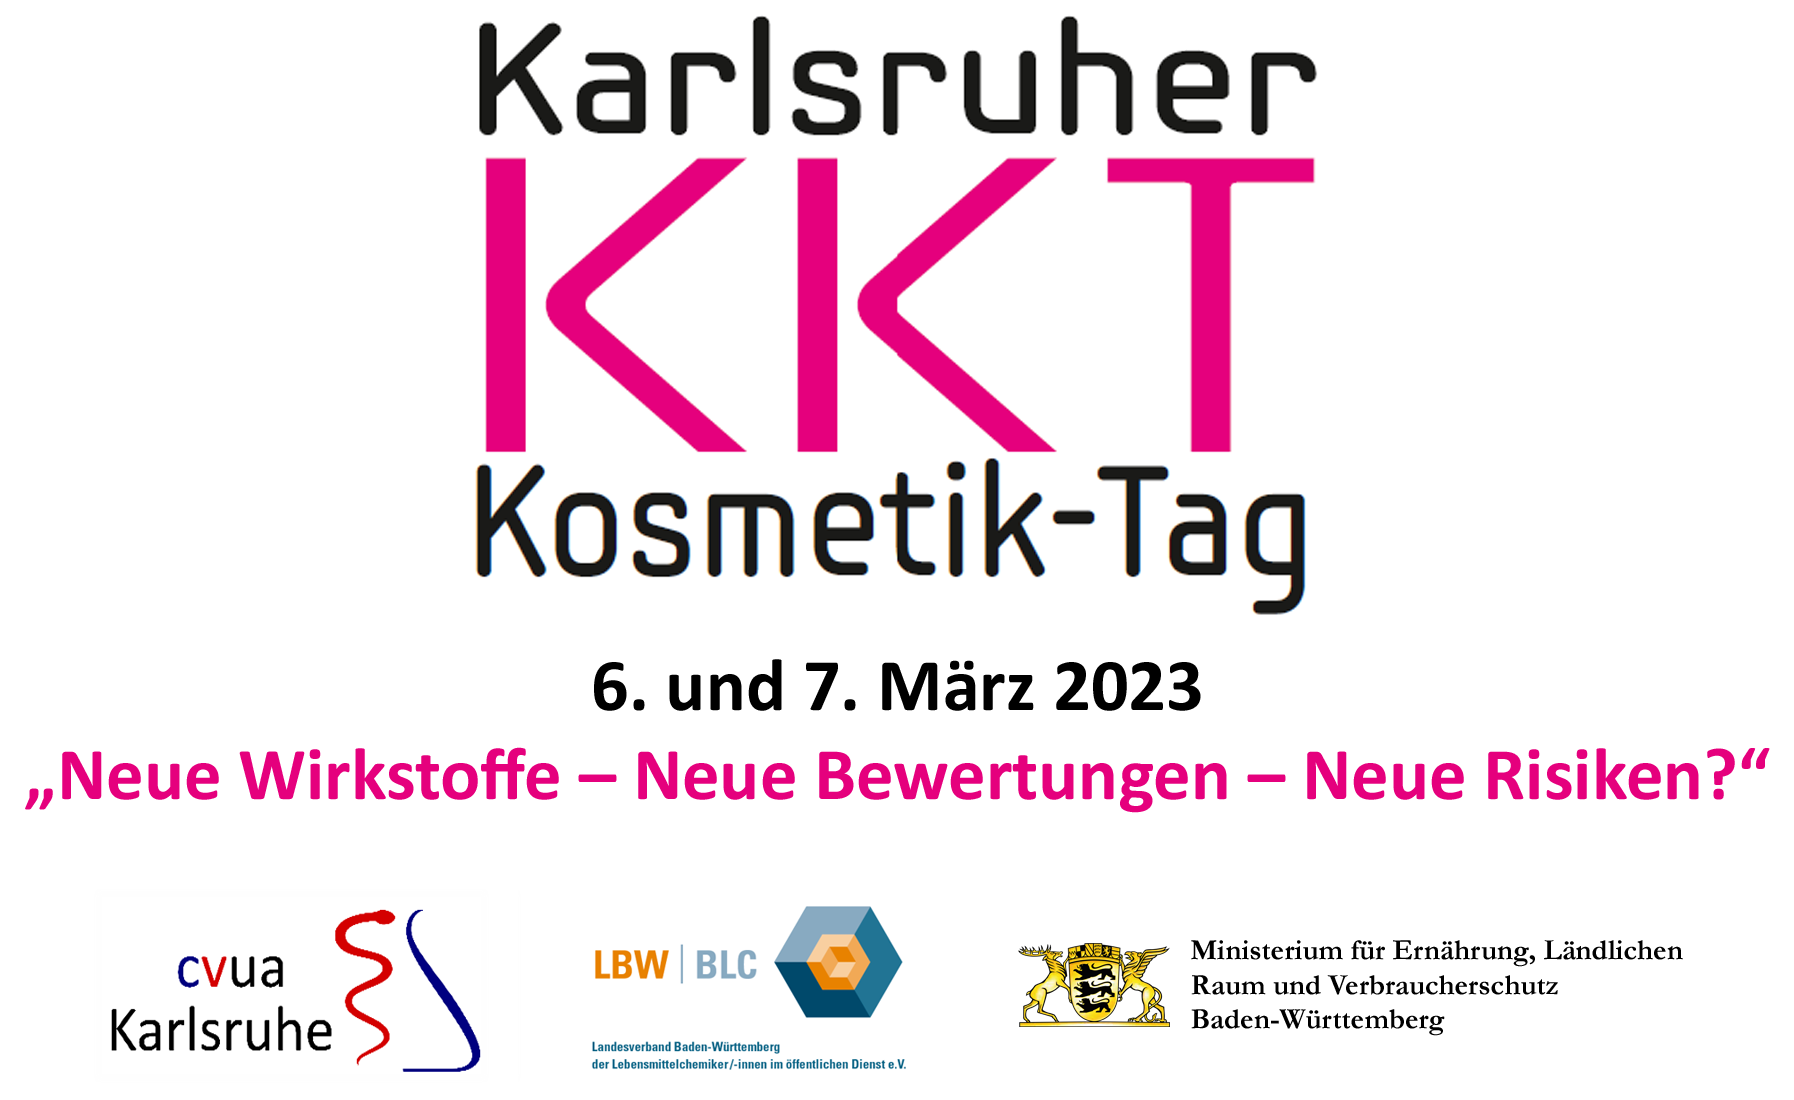 Auf der Abbildung ist das Logo des Karlsruher Kosmetiktags 2023 mit dem Motto „Neue Wirkstoffe- Neue Bewertungen- Neue Risiken?“ zu sehen, sowie die Logos der Veranstalter, des CVUA Karlsruhe, des LBW und des Ministeriums